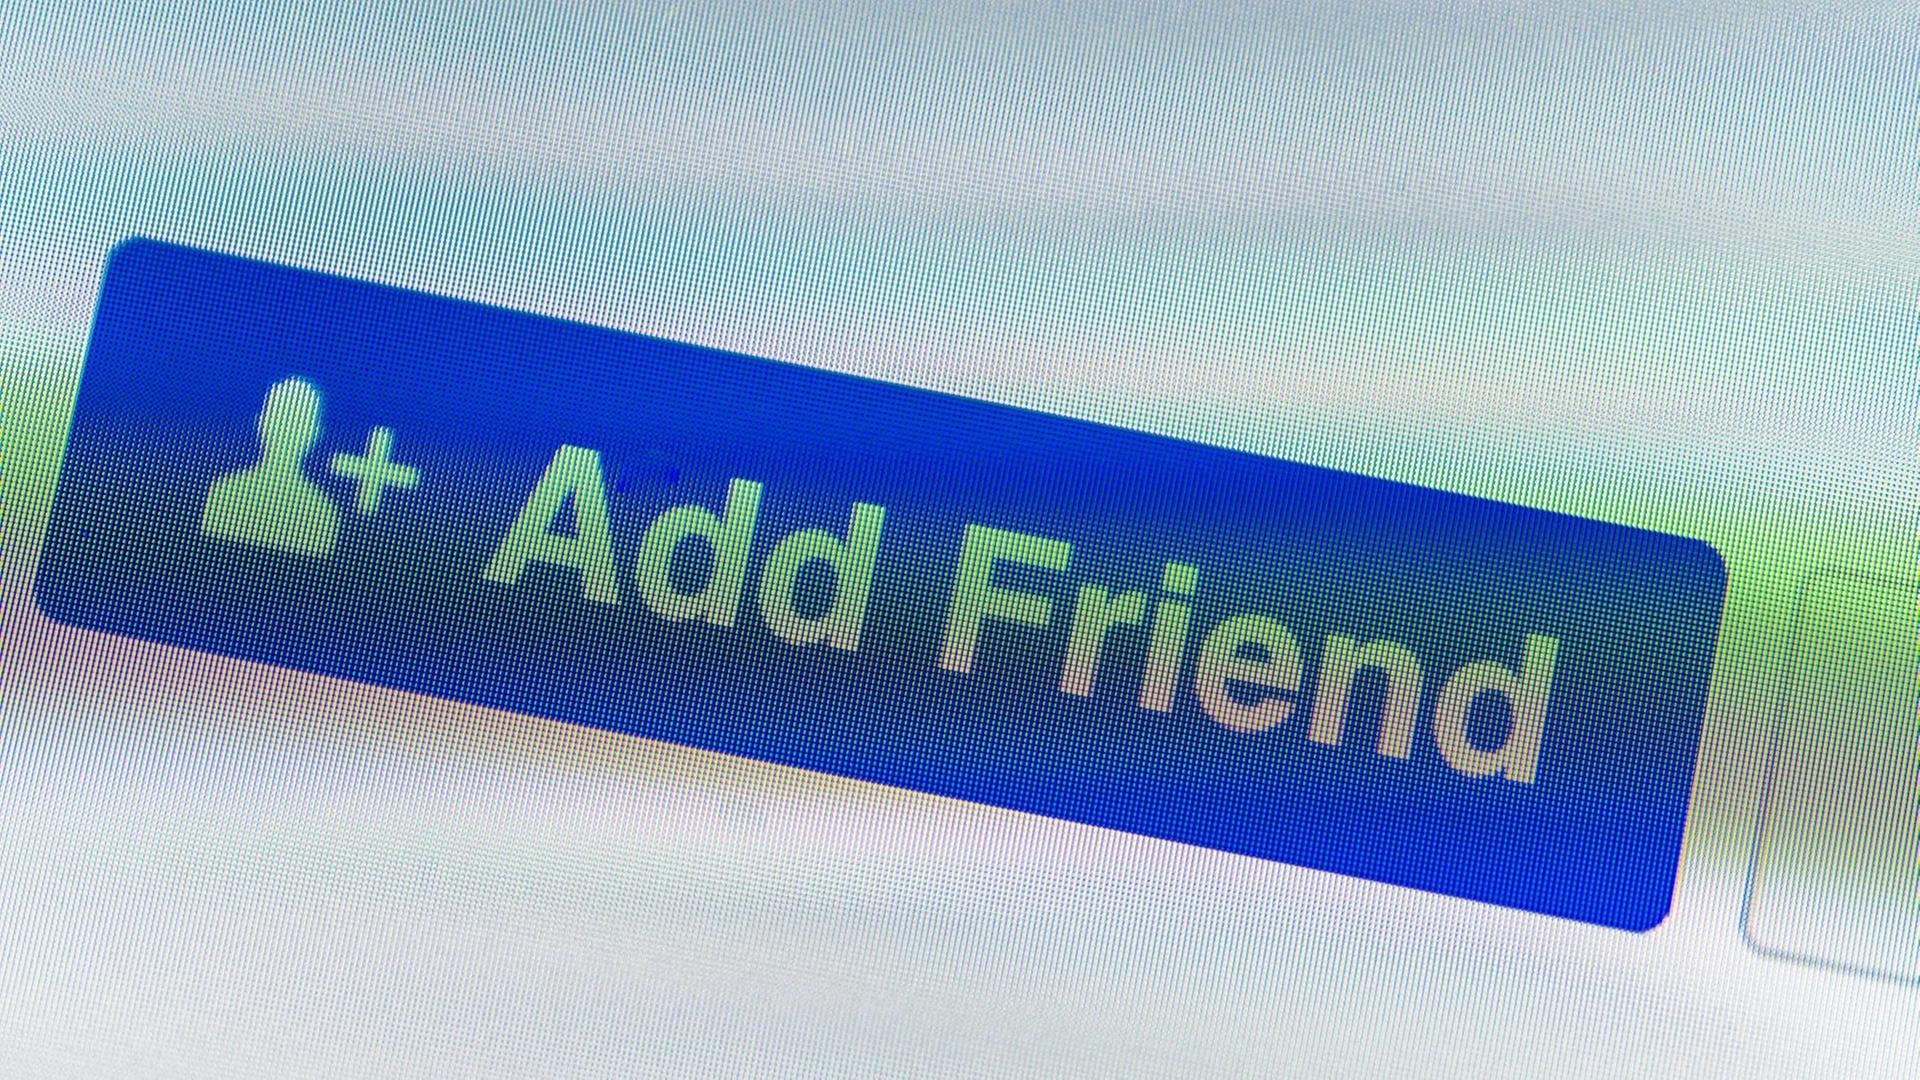 Anzeige Button mit der typischen Facebook Freundschaftsanfrage auf einem Smartphone.